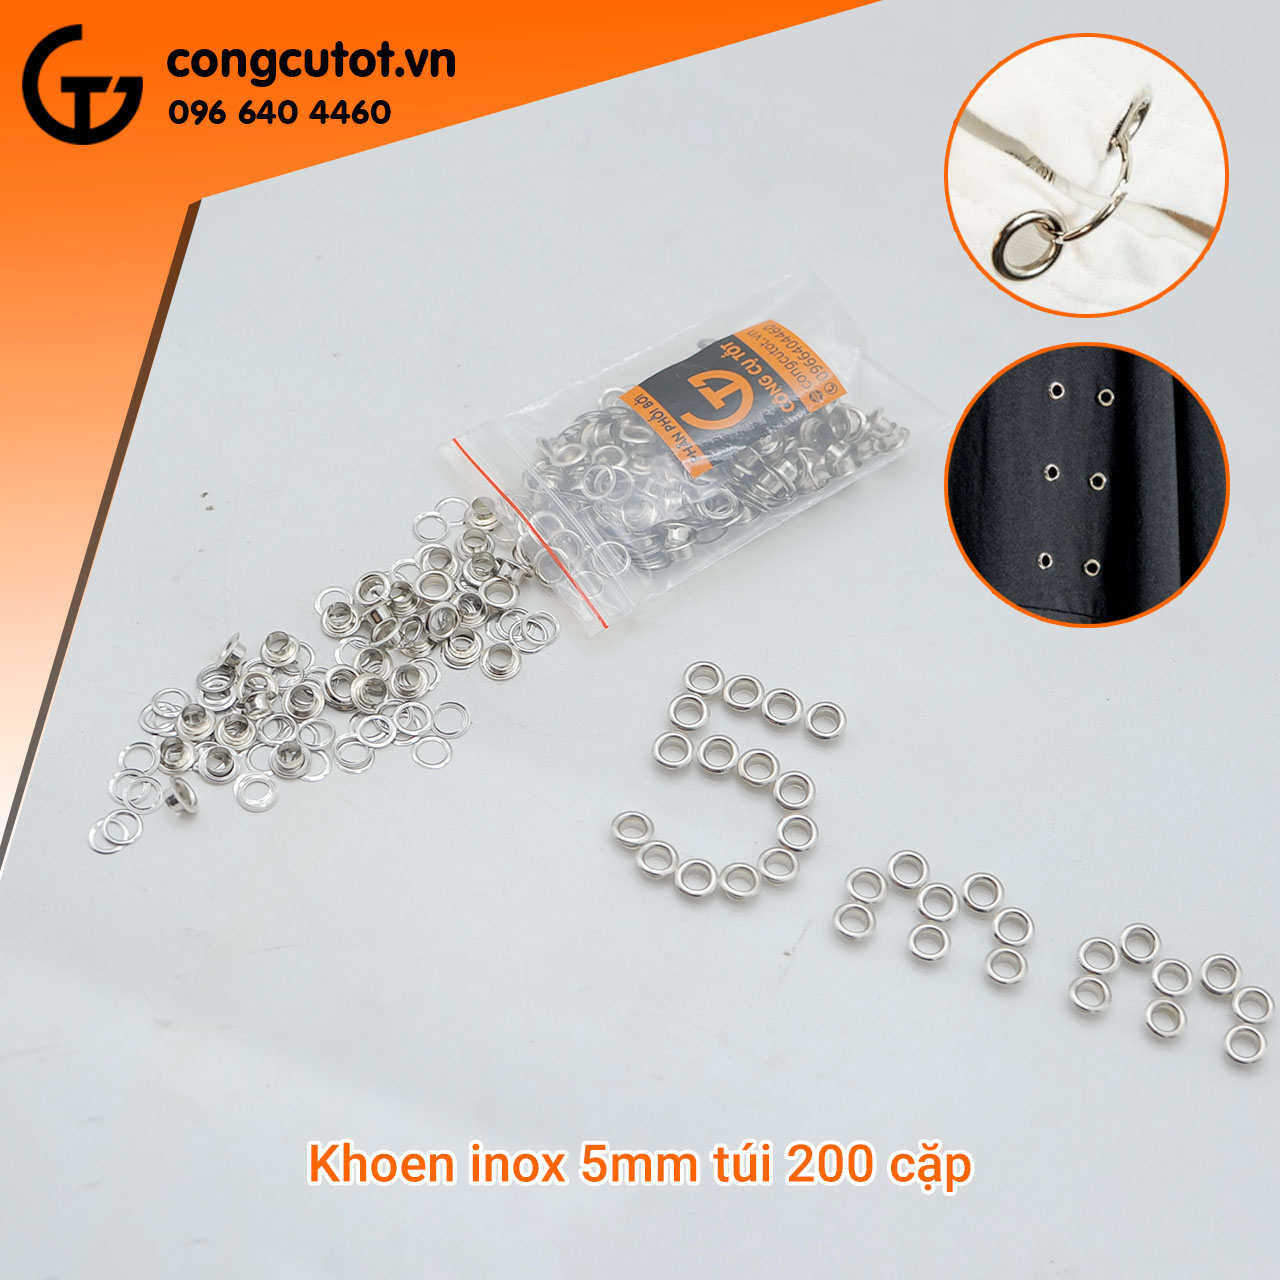 Khoen inox 5mm được đóng trong túi nilon với 200 cặp khoen 